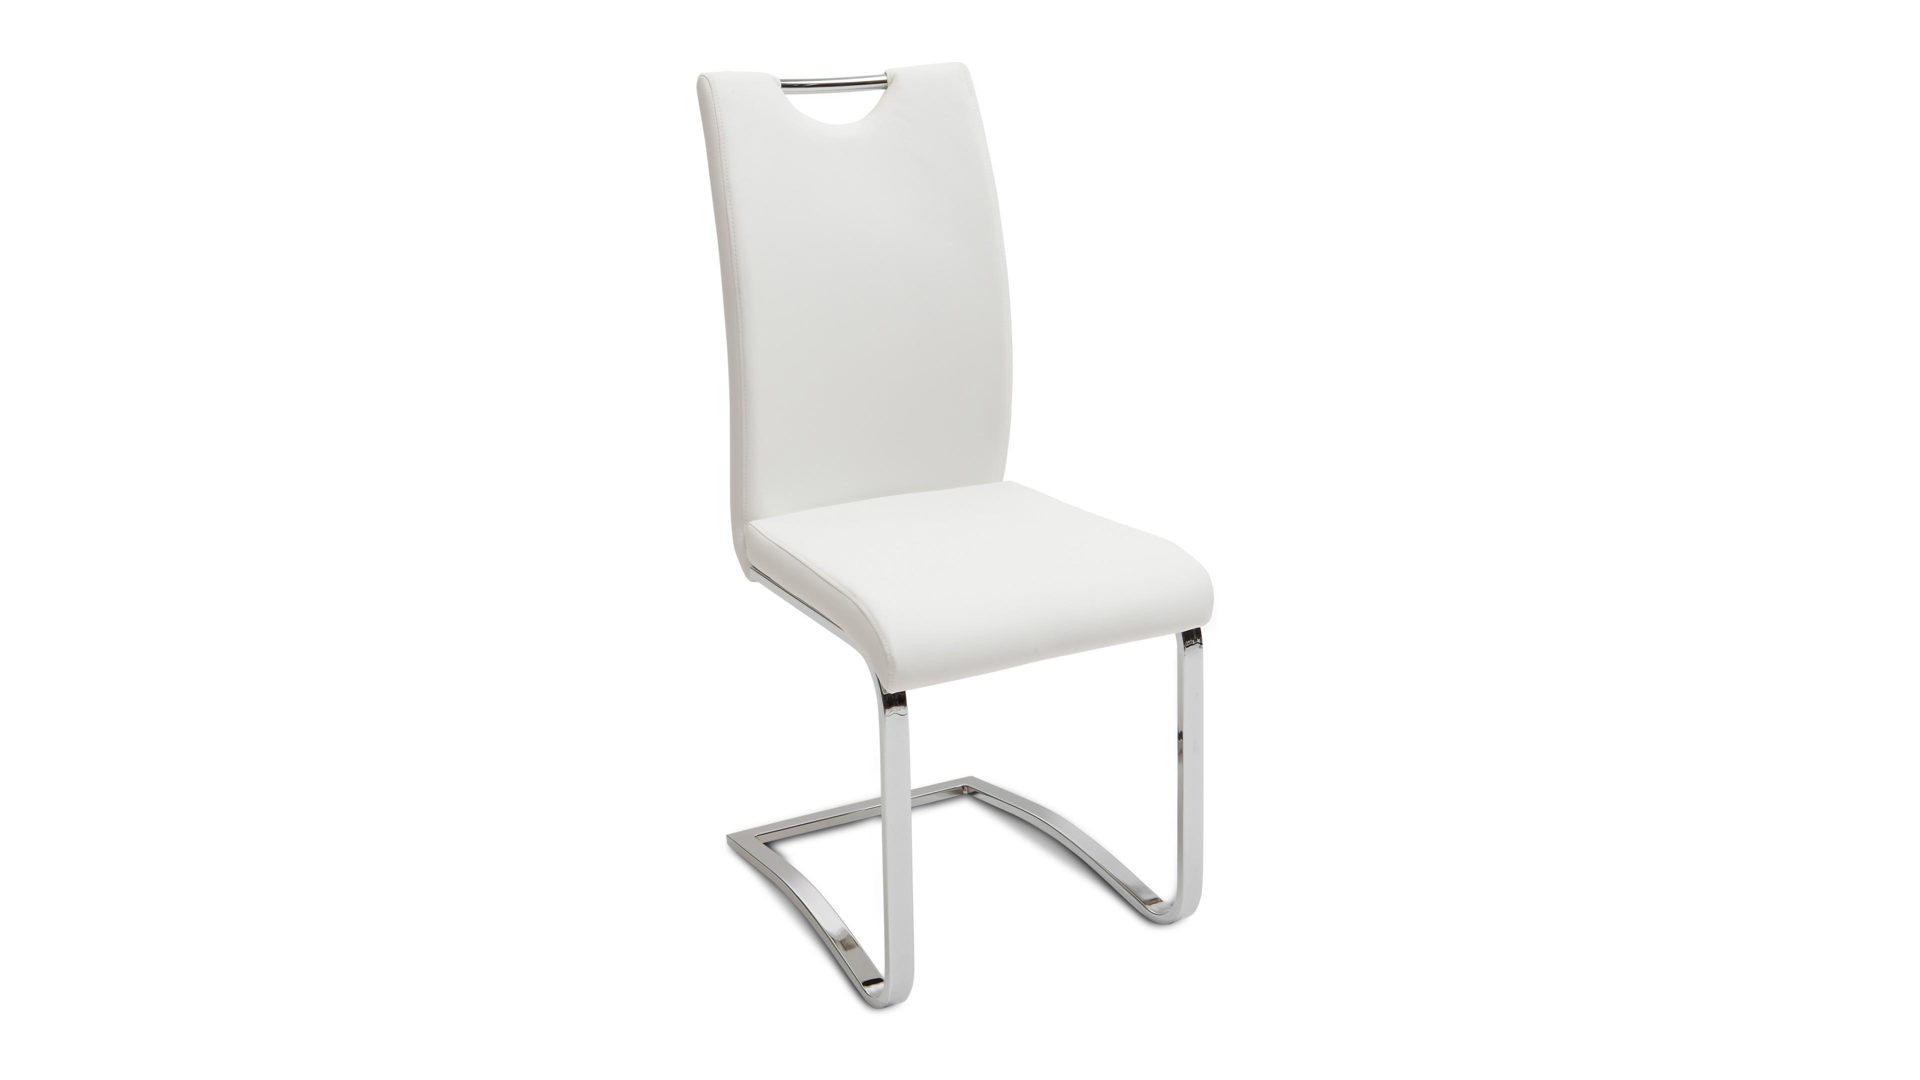 Schwingstuhl Mca furniture aus Stoff in Weiß Schwingstuhl als moderner Freischwinger  weißes Kunstleder CPW & verchromtes Metallgestell